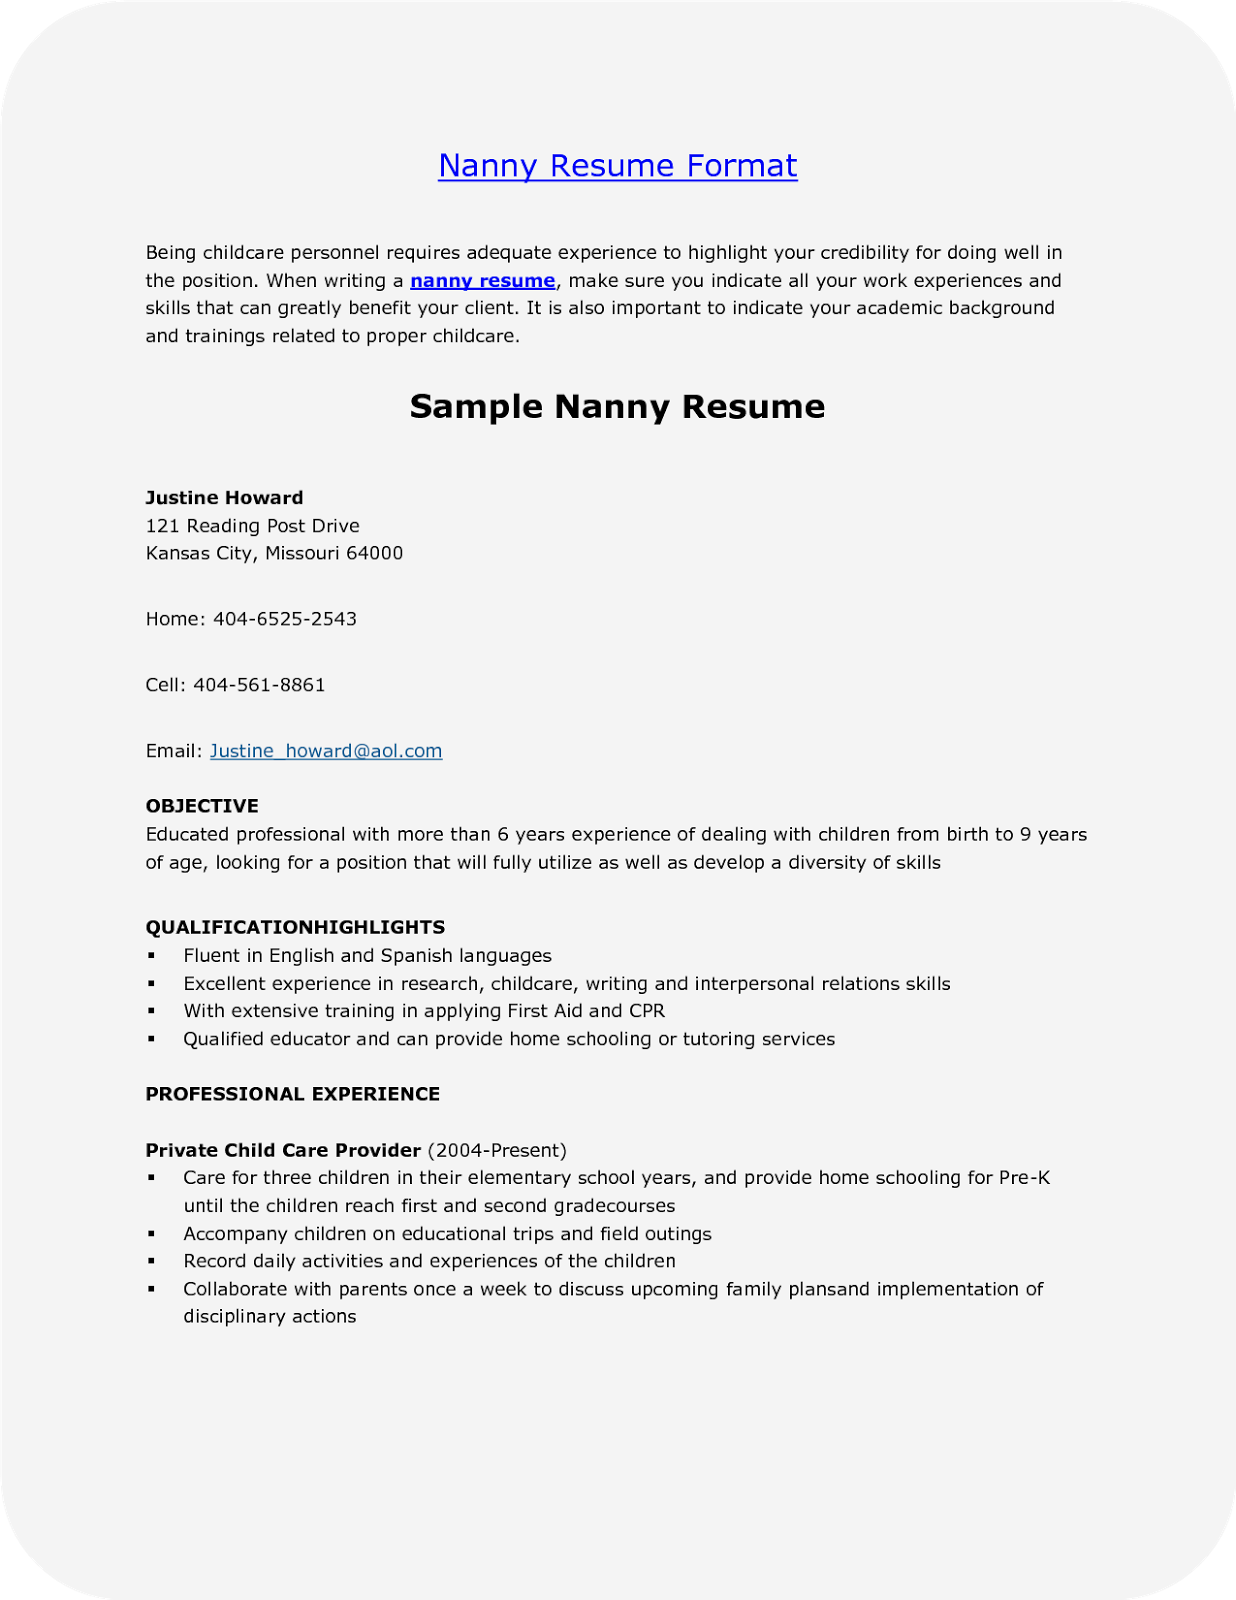 Free sample nanny resumes